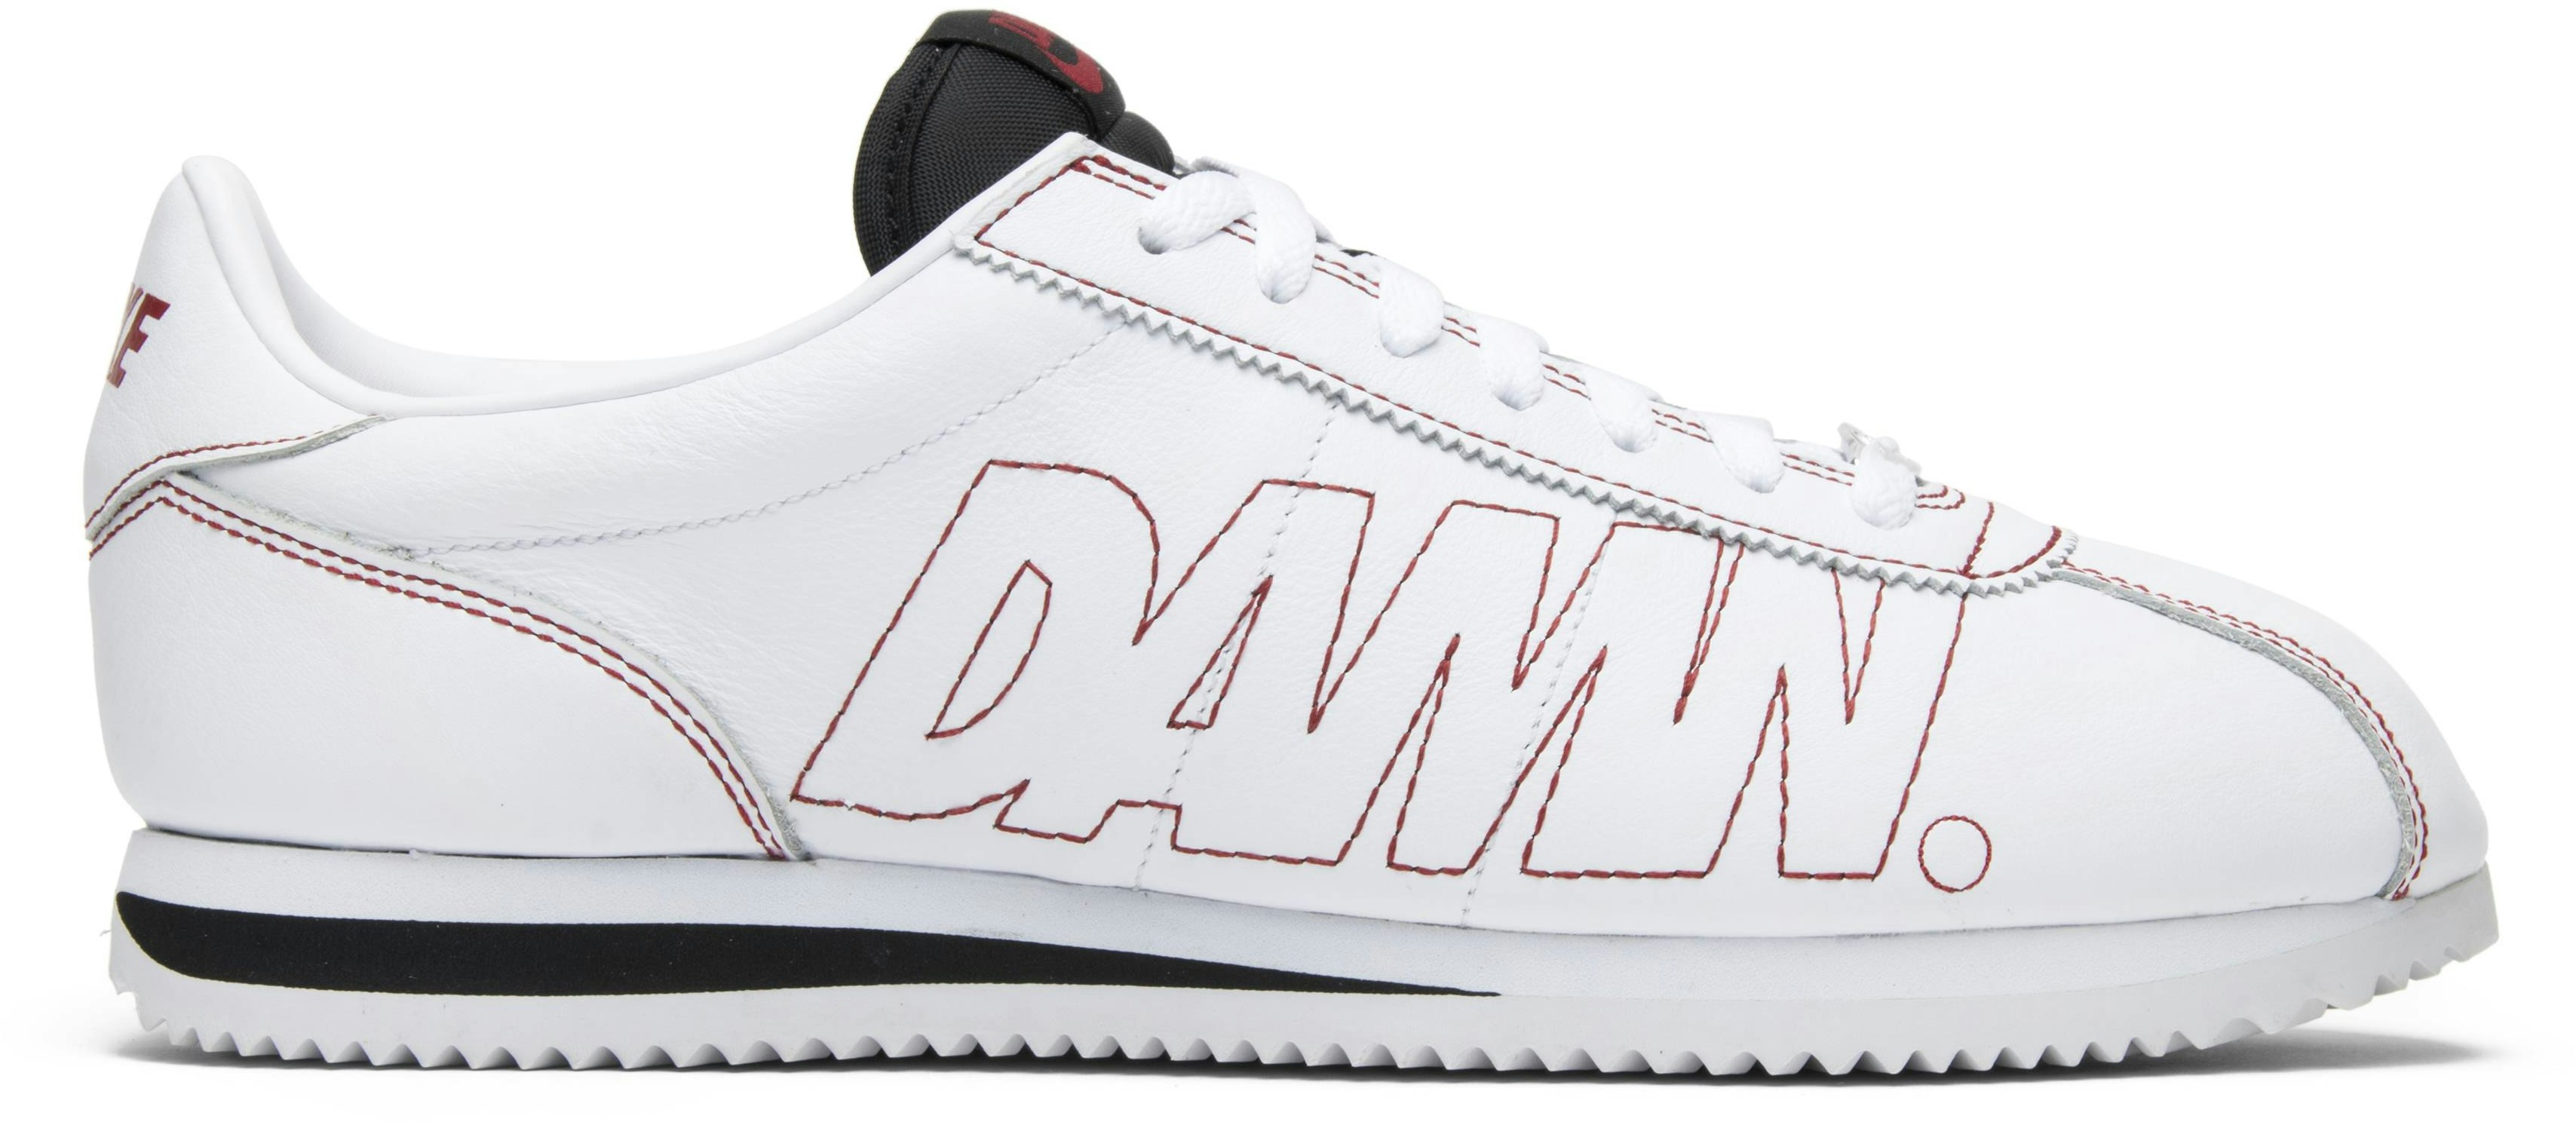 Nike Cortez Kenny Kendrick Lamar Damn White Gym Red - AV8255-106 - Novelship